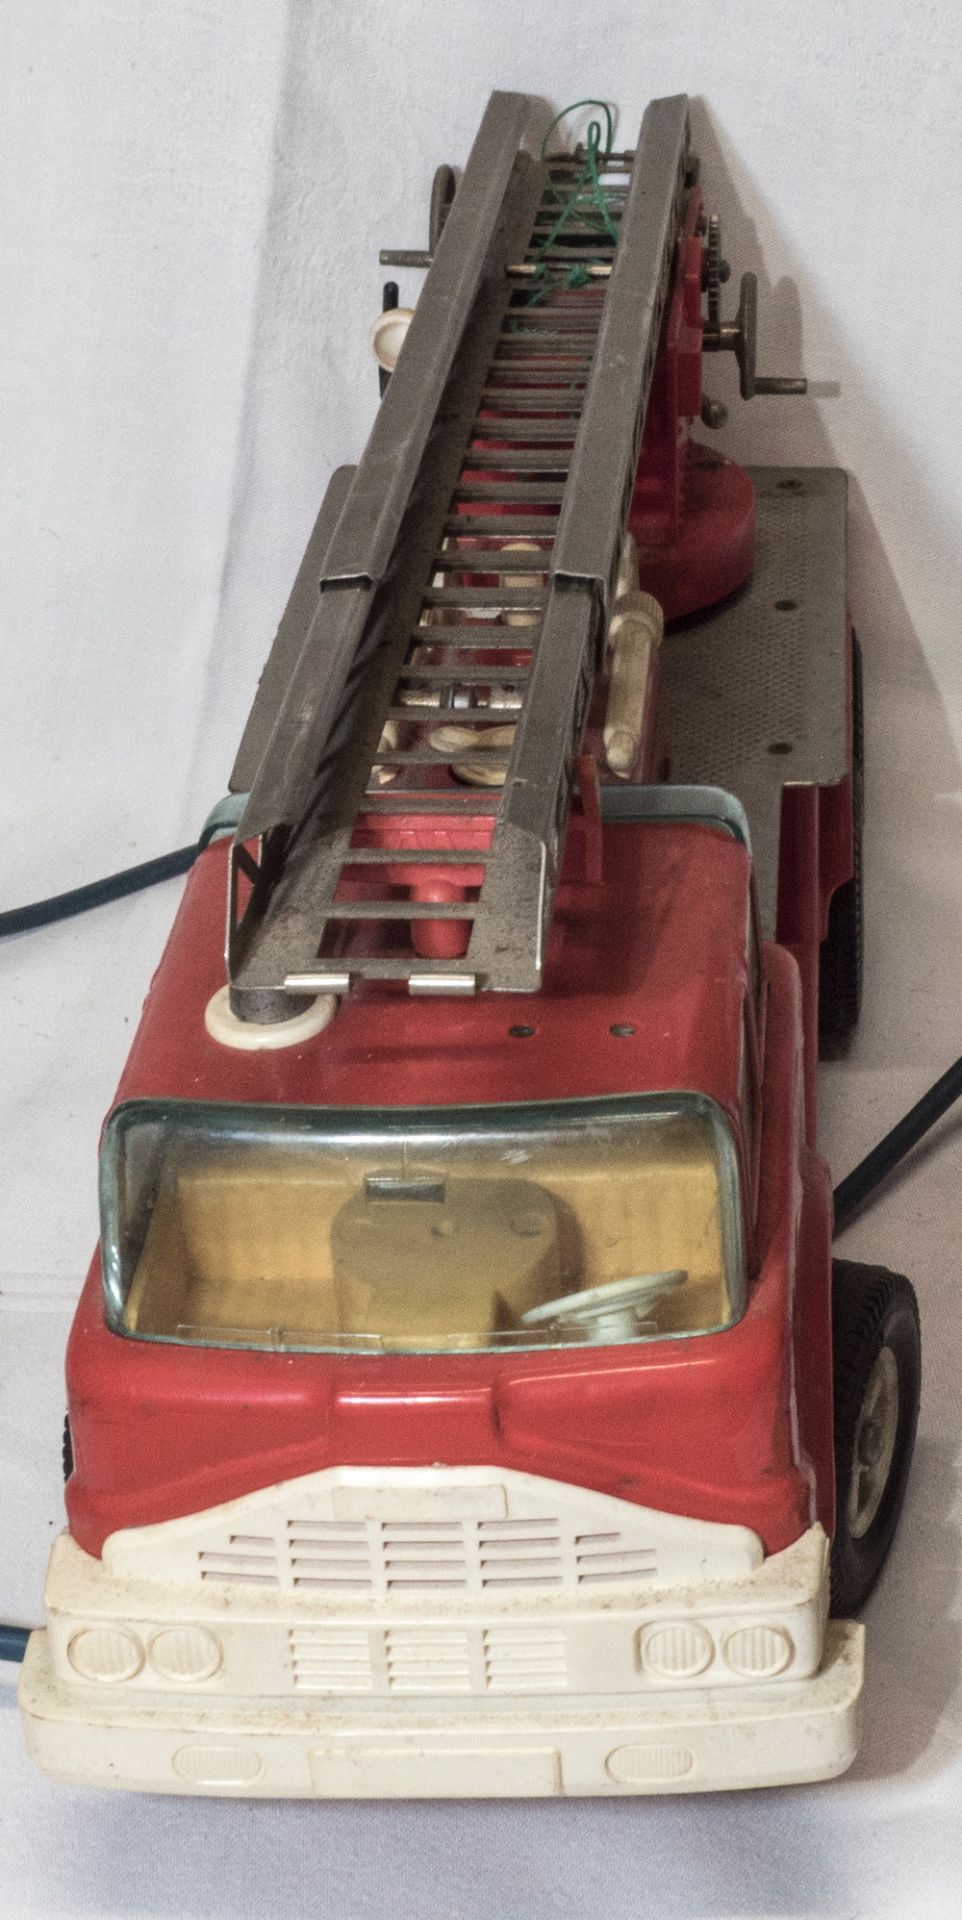 Gama Feuerwehrauto mit Fernbedienung. Nicht komplett. Länge: ca. 32 cm. Funktion nicht geprüft. - Bild 2 aus 5